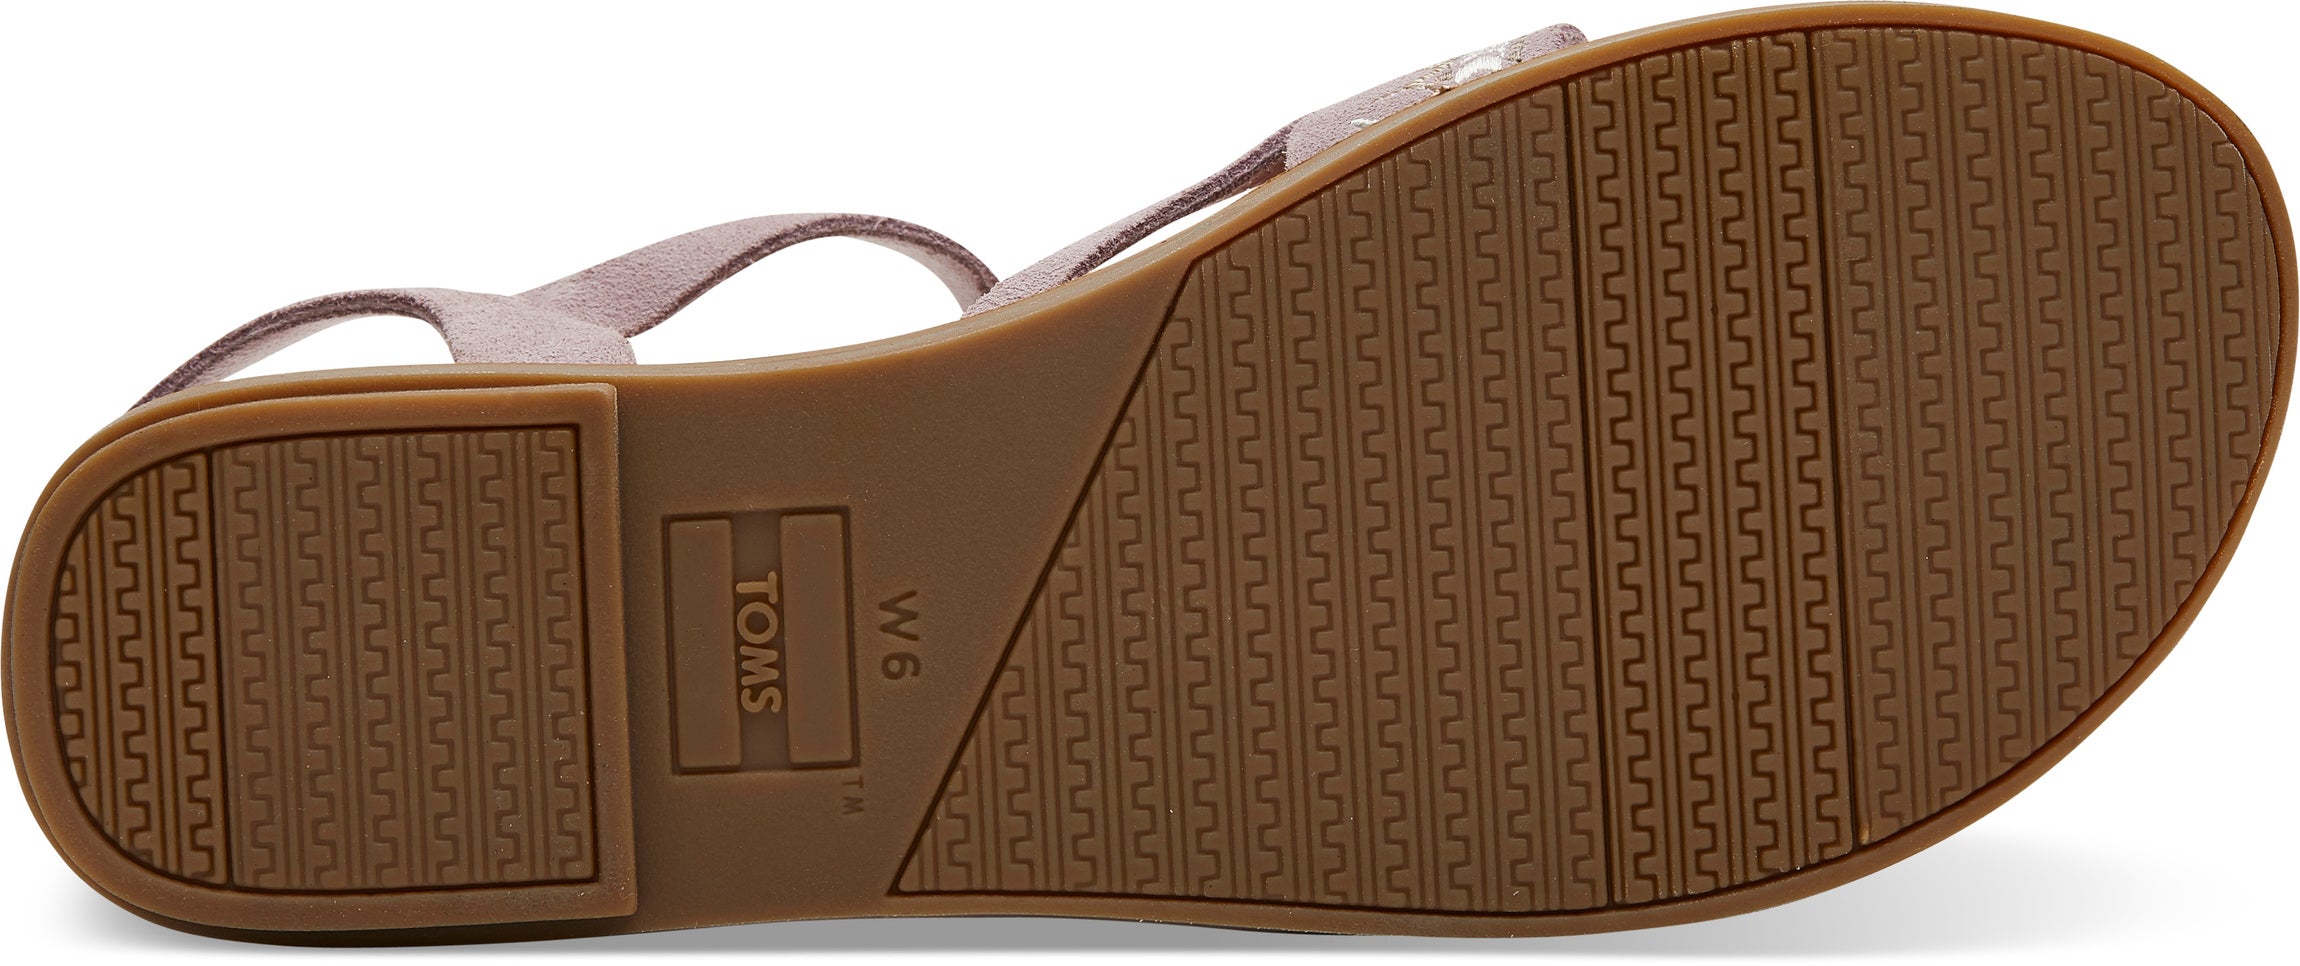 Dámské světle fialové sandálky TOMS Lexie Sandals